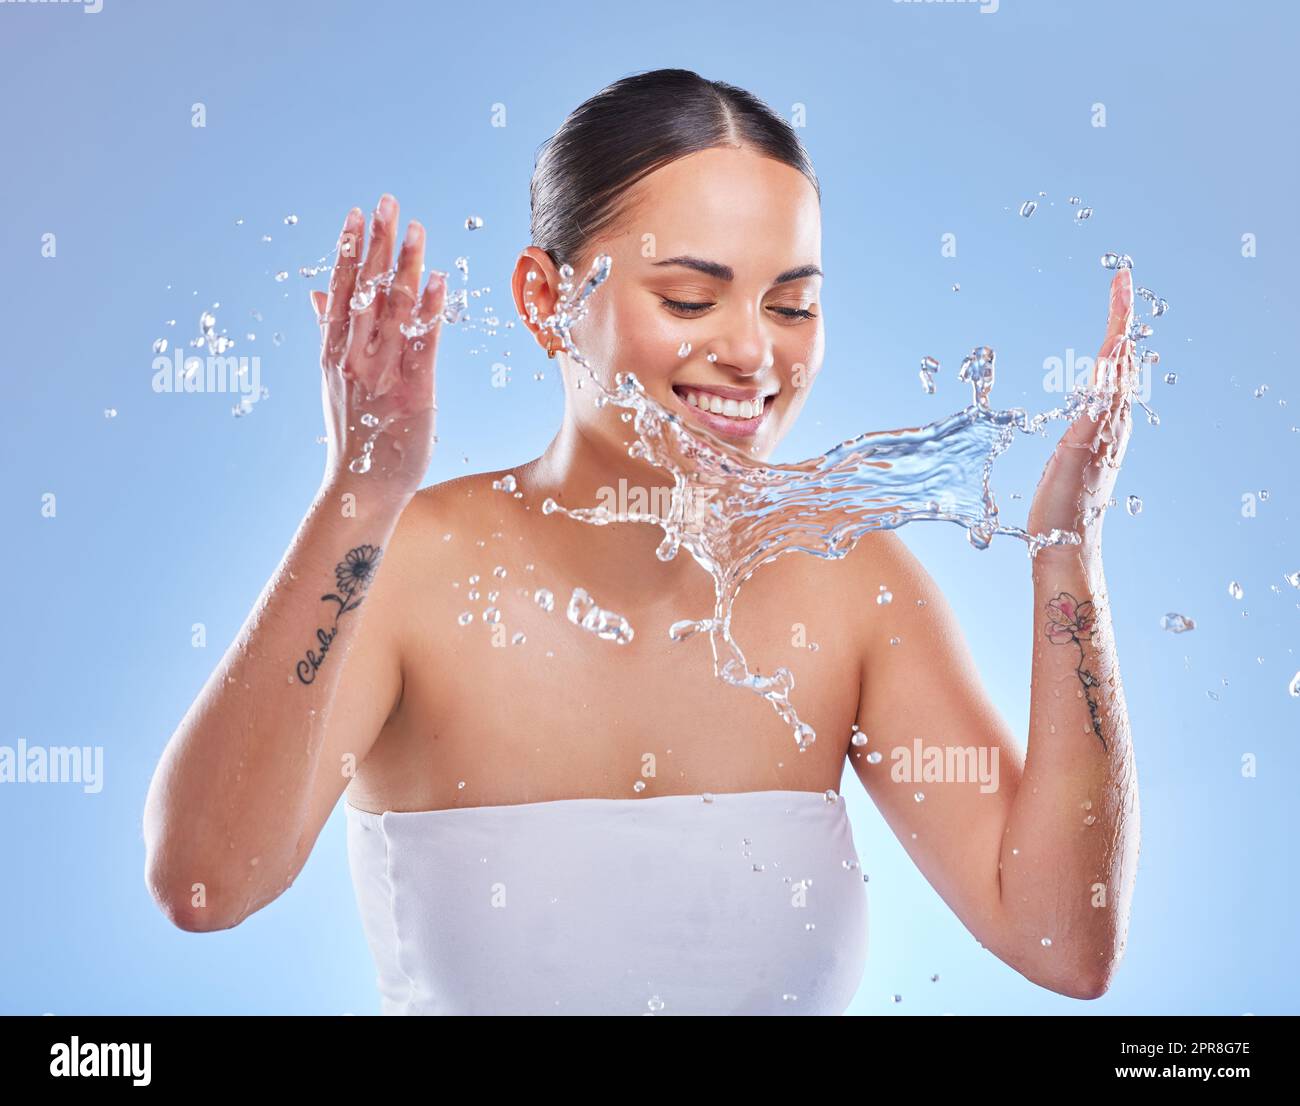 Werde nass mit mir. Aufnahme einer schönen jungen Frau, die vor blauem Hintergrund mit Wasser bespritzt wurde. Stockfoto